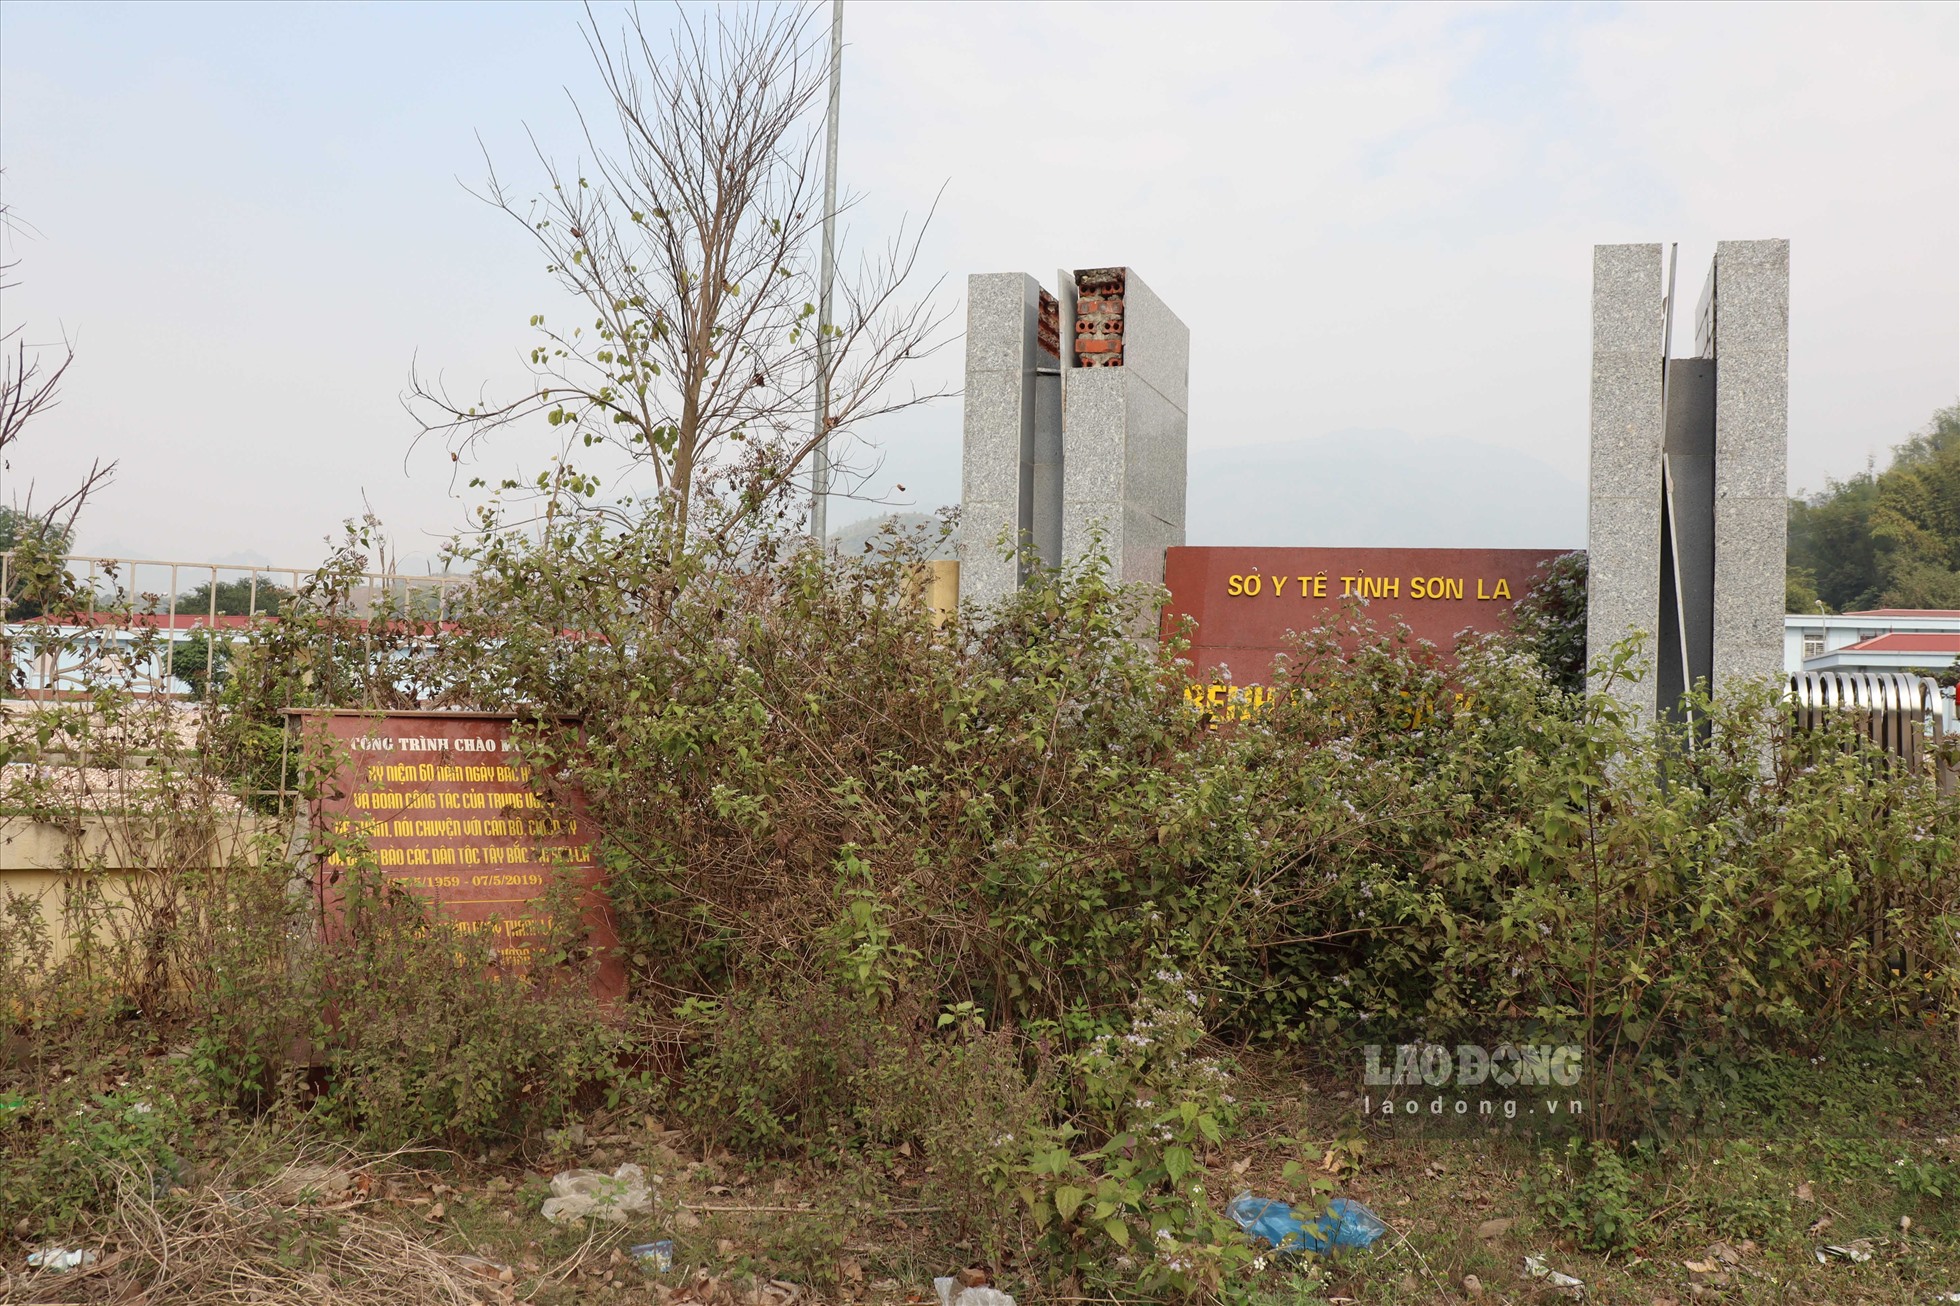 Cỏ cây mọc cao, che kín biển tên với dòng chữ “Bệnh viện đa khoa huyện Mường La”.